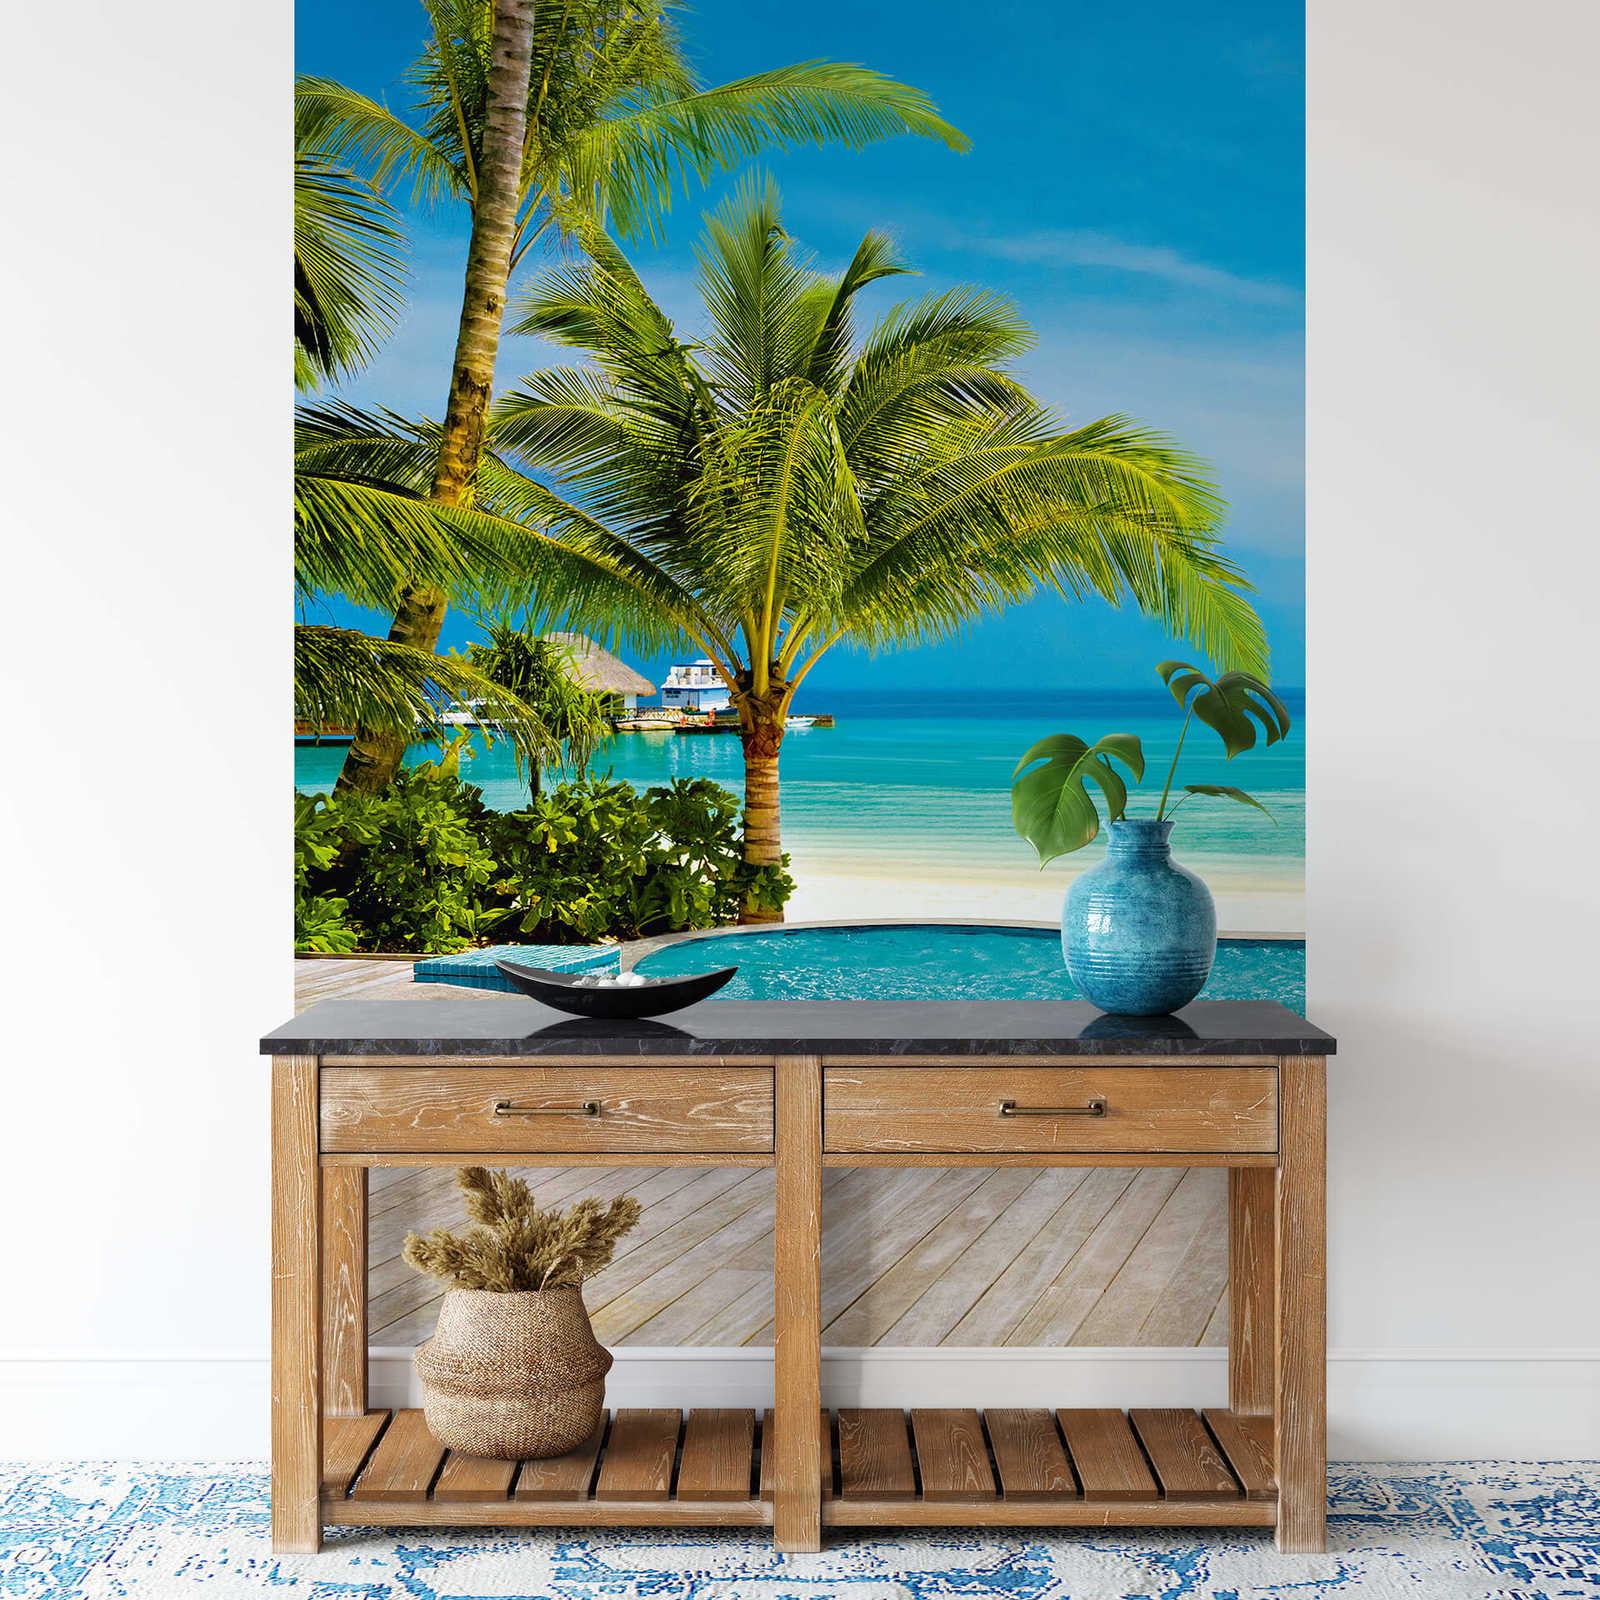             Papel pintado Wellness Playa y Piscina en formato vertical
        